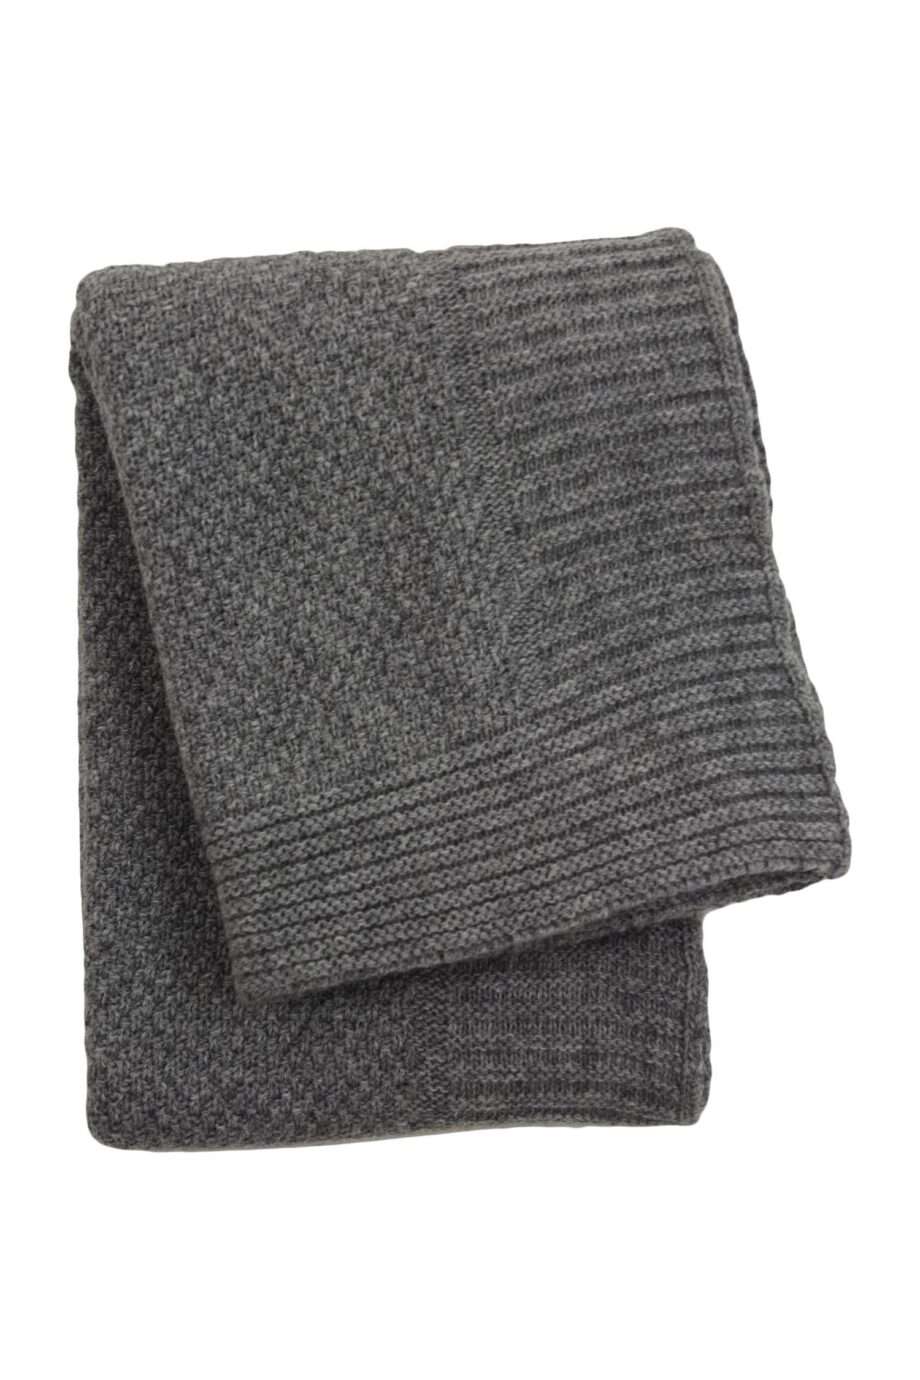 rice grey knitted woolen little blanket medium